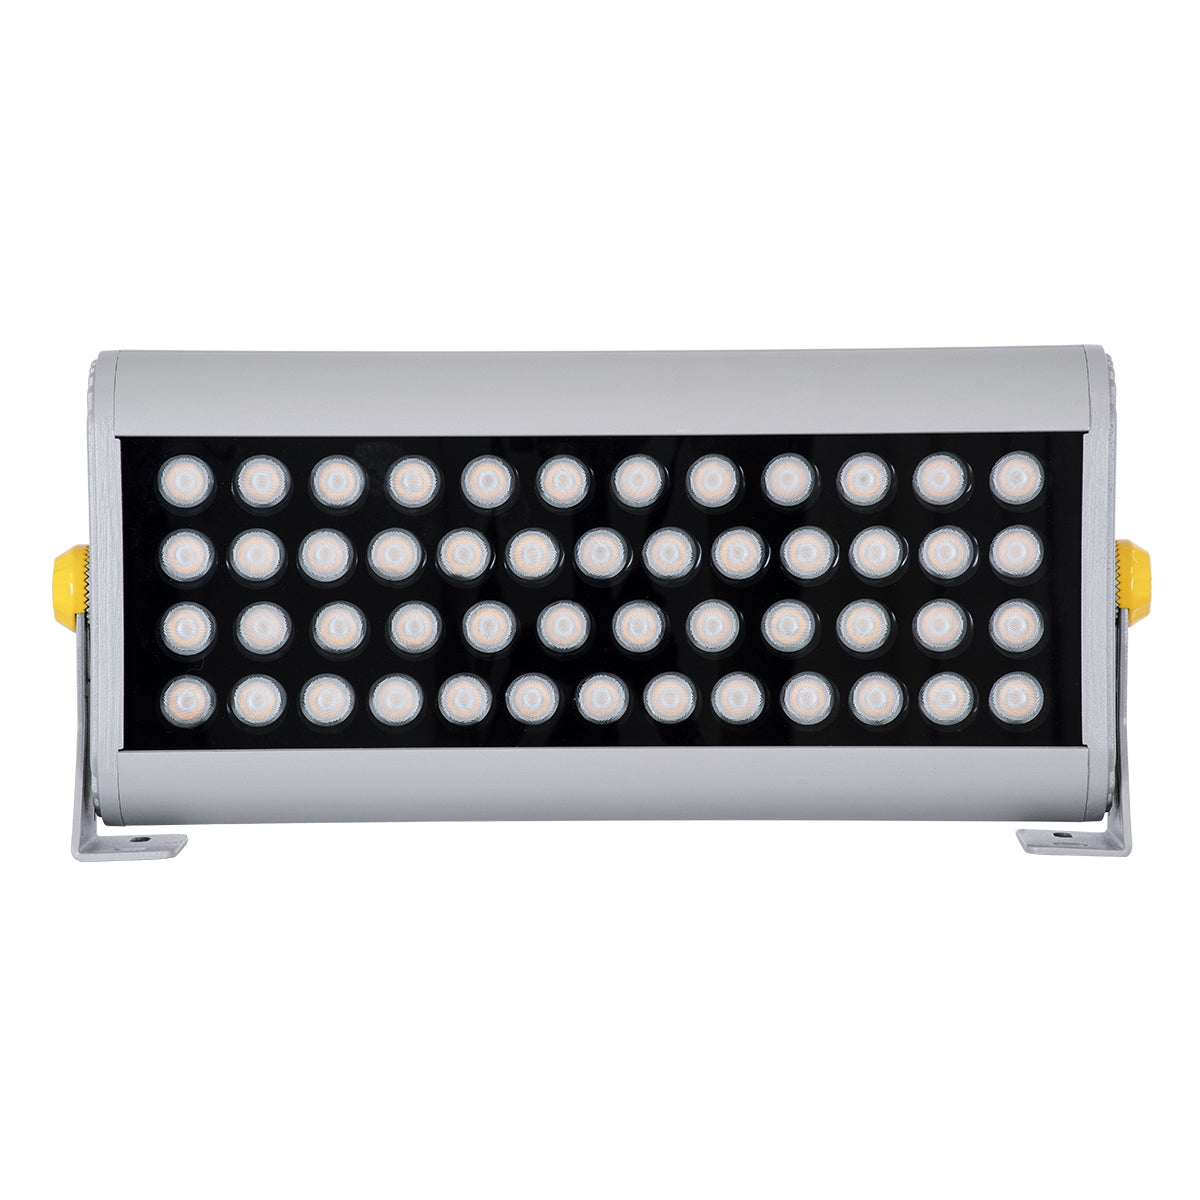 GloboStar® FLOOD-HENA 90446 Προβολέας Wall Washer για Φωτισμό Κτιρίων LED 48W 4080lm 30° AC 220-240V Αδιάβροχο IP67 Μ39 x Π6 x Υ17cm Αρχιτεκτονικό Πορτοκαλί 2200K - Ασημί